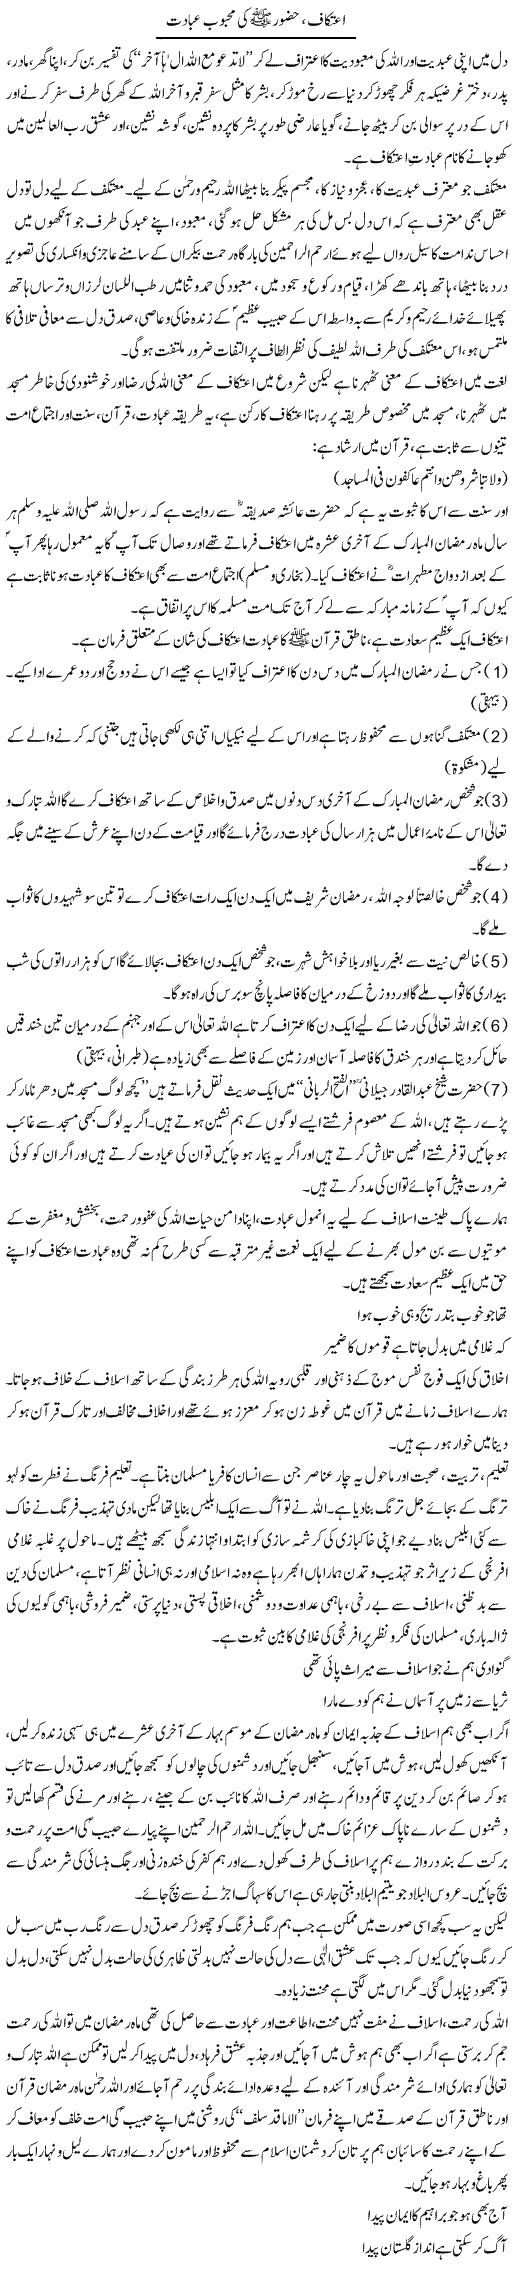 Aitekaf, Hazur Ki Mehboob Ibadat | Dr. Muhammad Tayyab Khan Singhanvi | Daily Urdu Columns